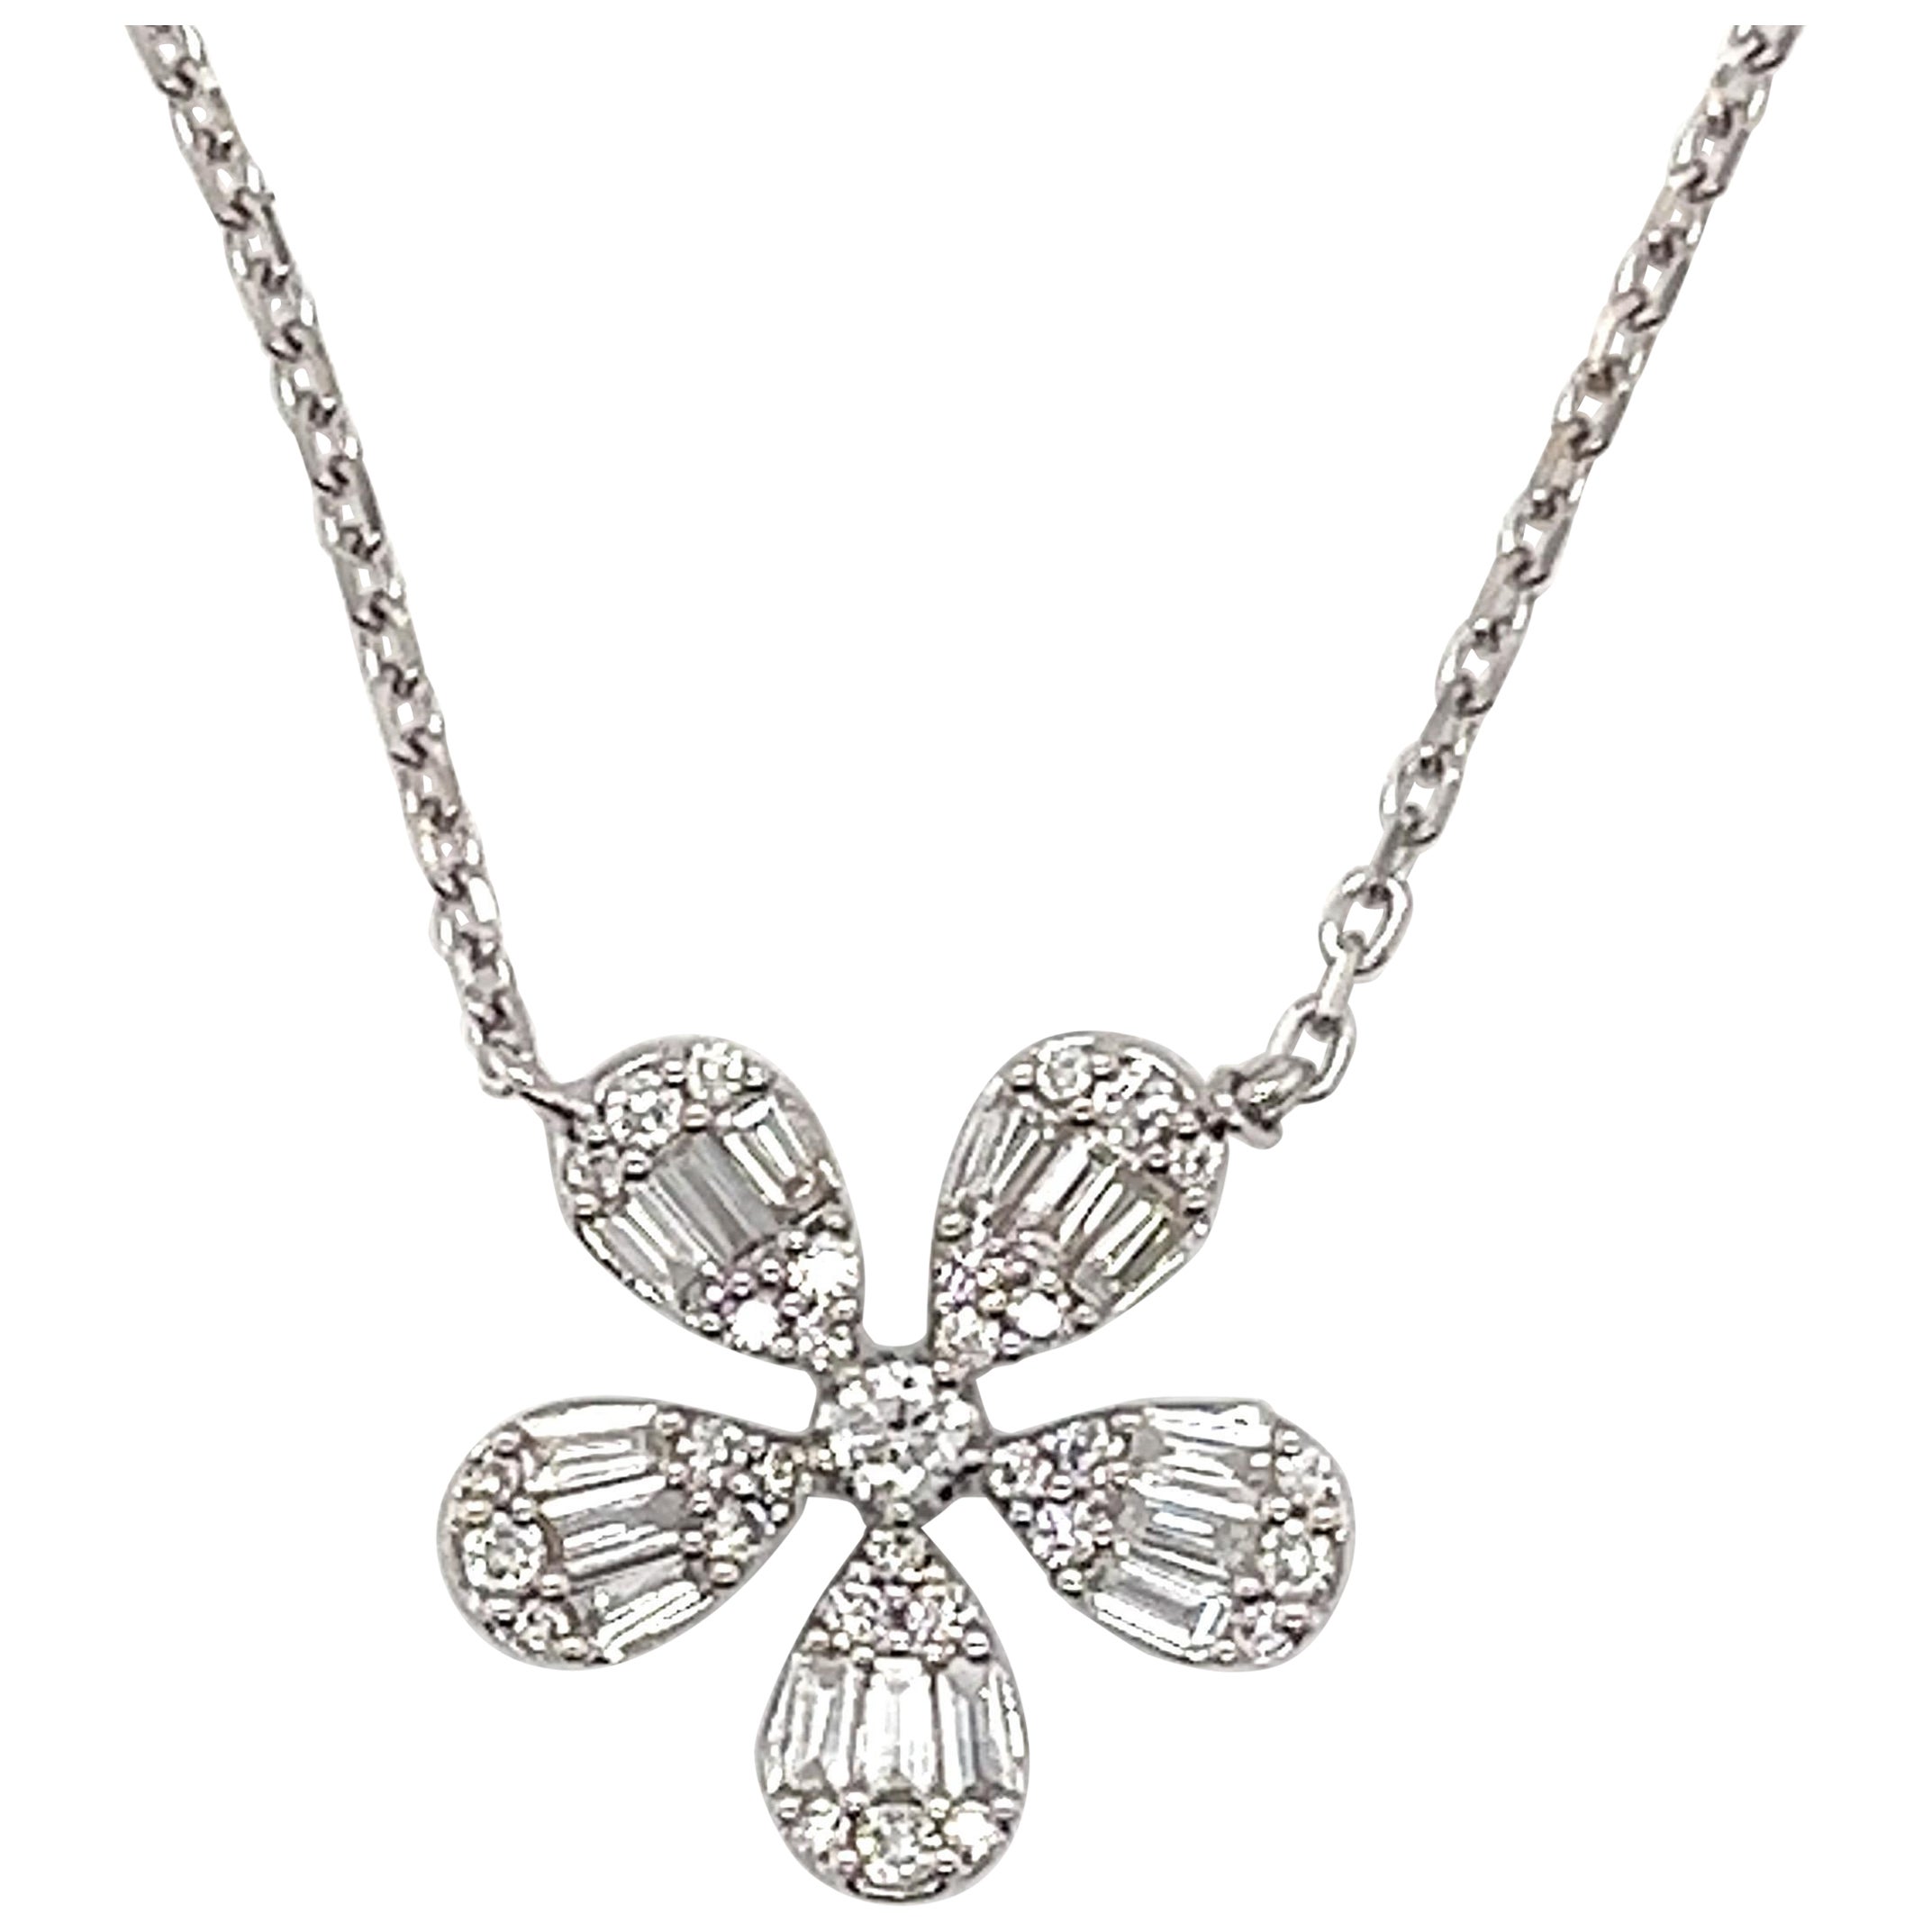 Diamond Clover Necklace in 18 Karat White Gold